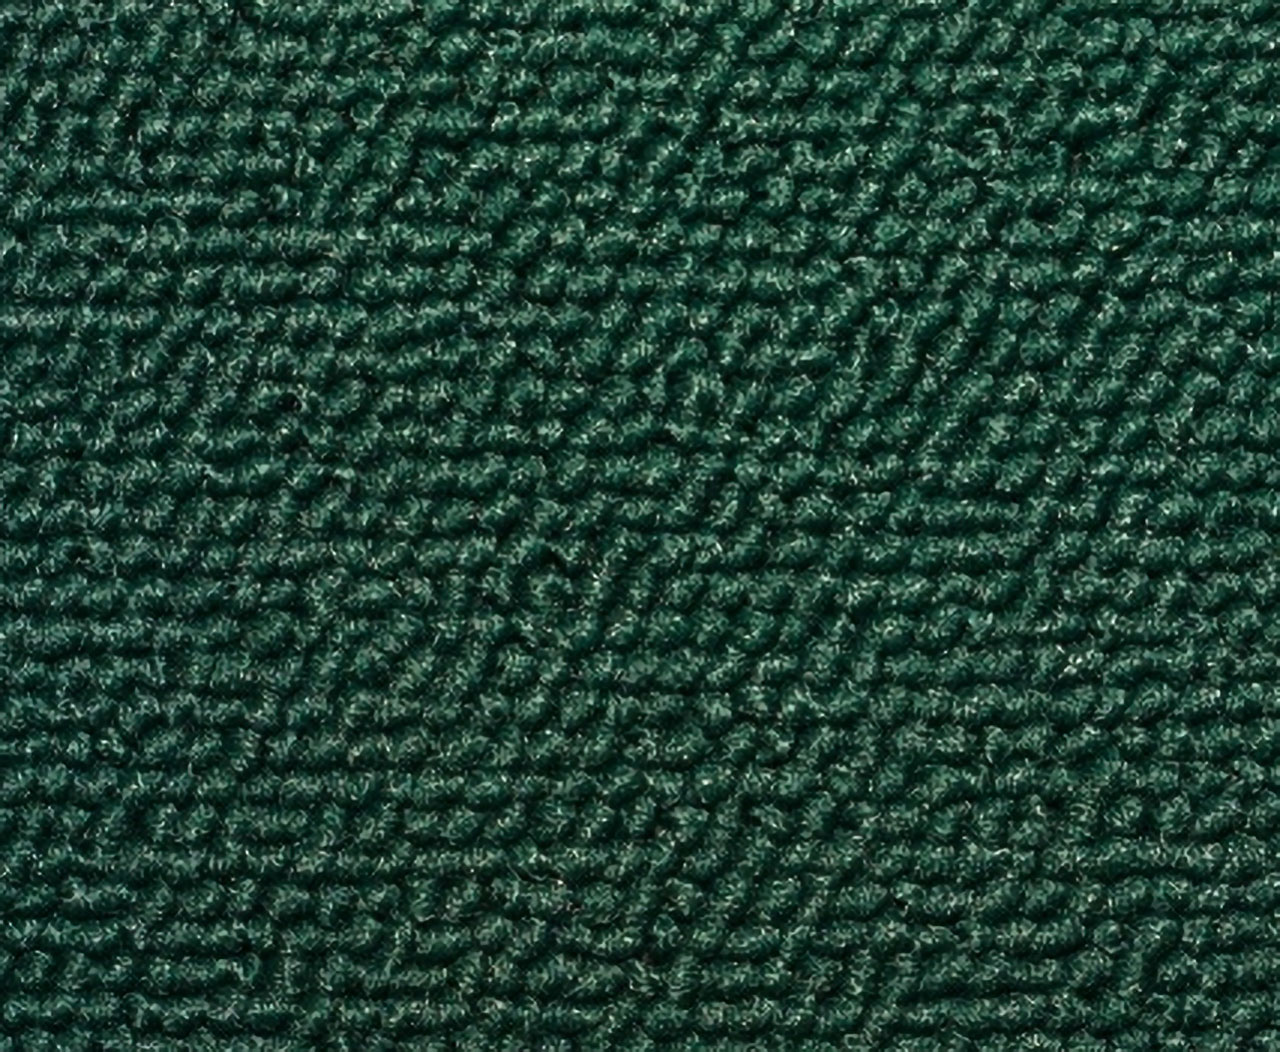 Holden Kingswood HQ Kingswood Ute Sept72-Mar73 16E Olive Green Carpet (Image 1 of 1)